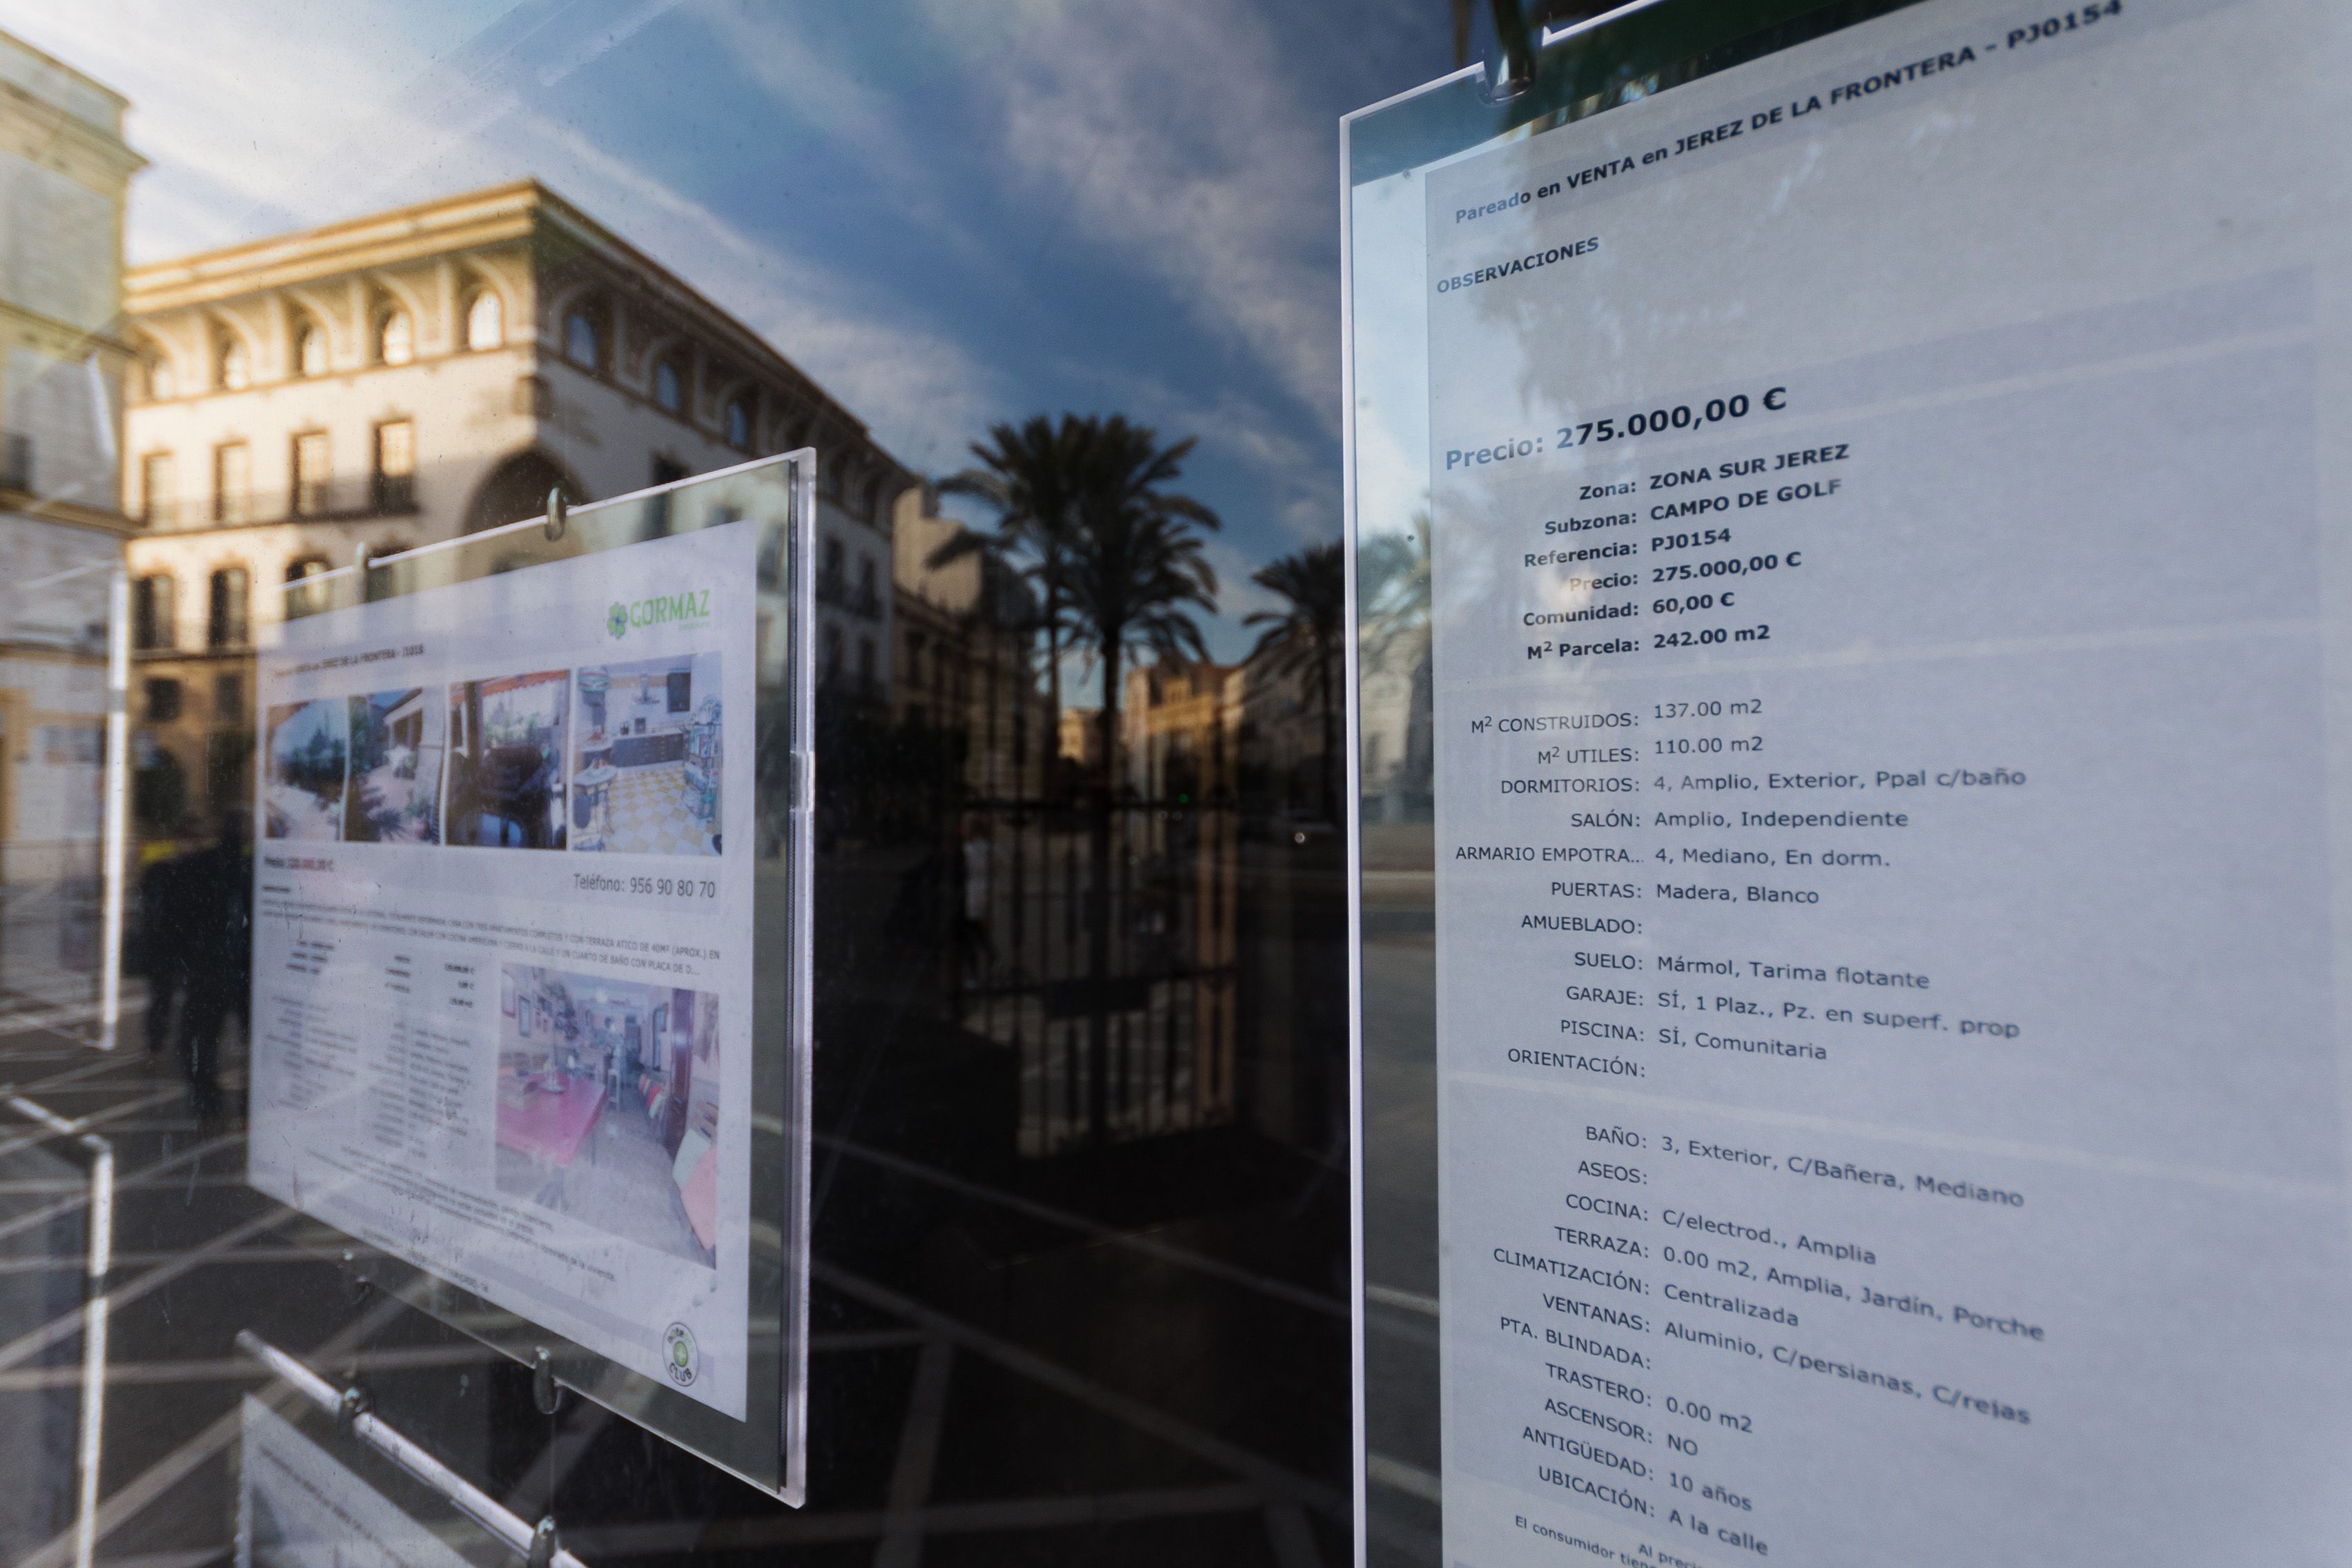 Anuncios de ventas de viviendas en Jerez, este lunes.